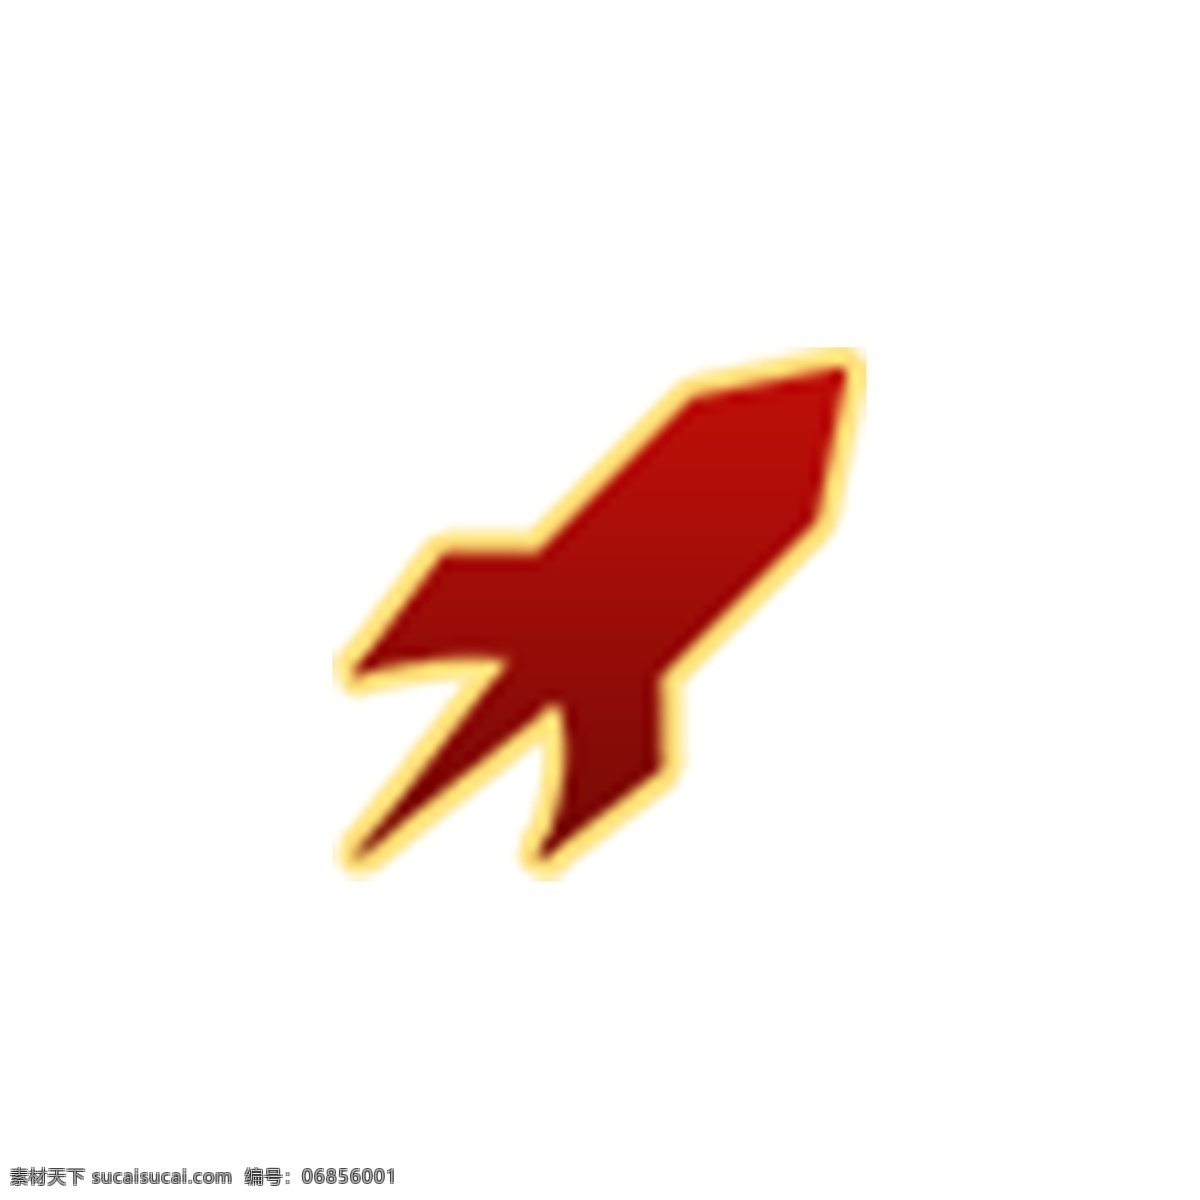 扁平化小火箭 小飞船 小火箭 扁平化ui ui图标 手机图标 界面ui 网页ui h5图标